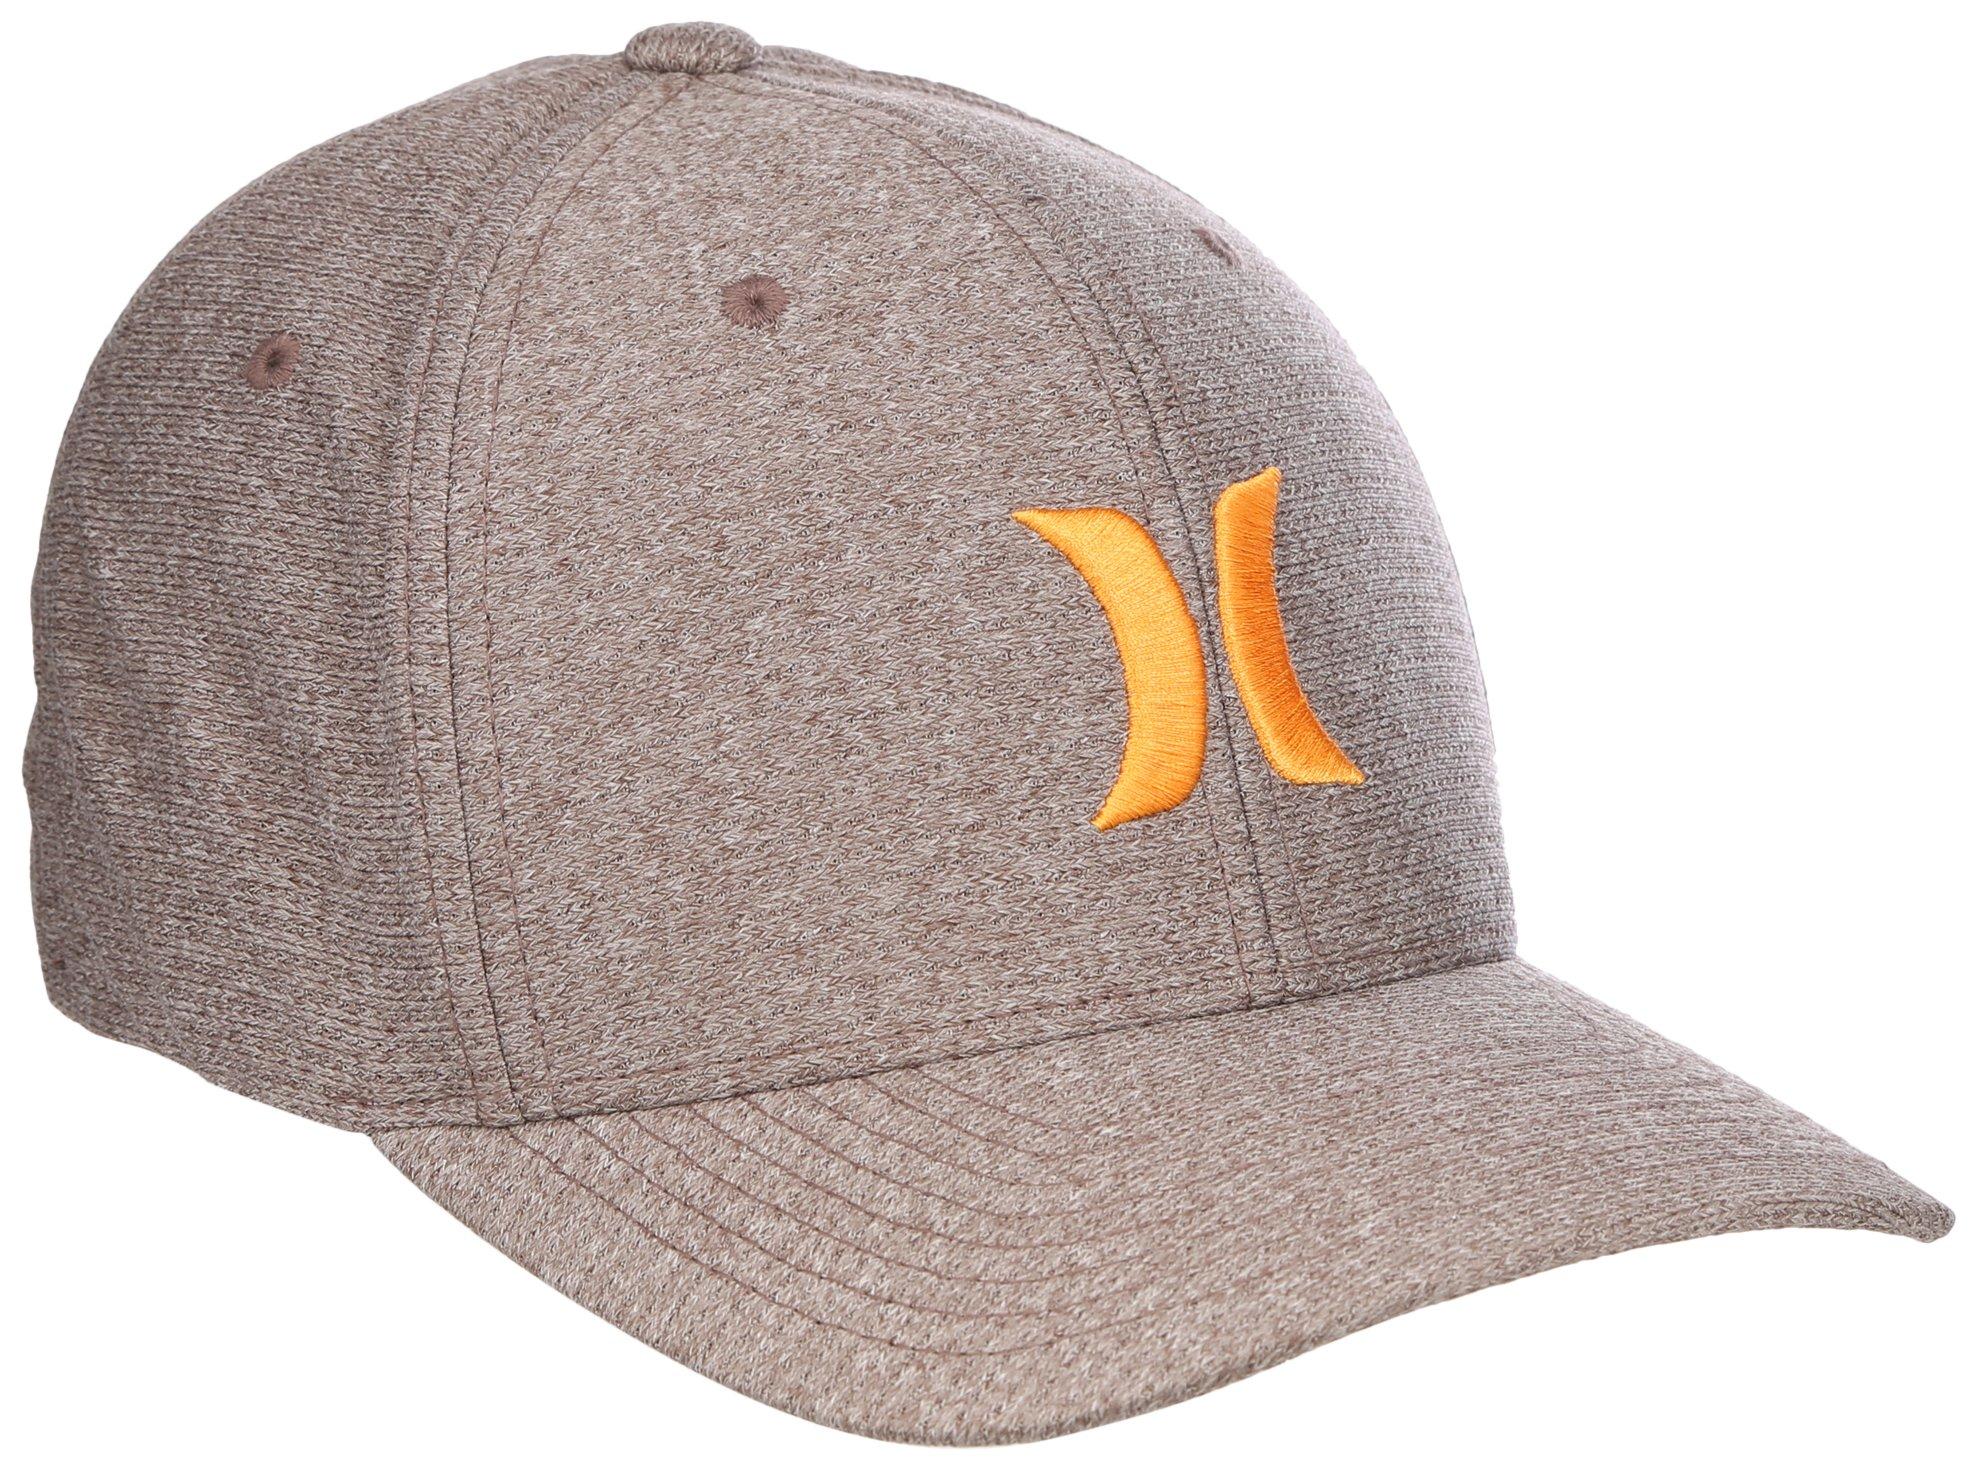 Hurley Men's Cap - Del Mar Snap Back Trucker Hat